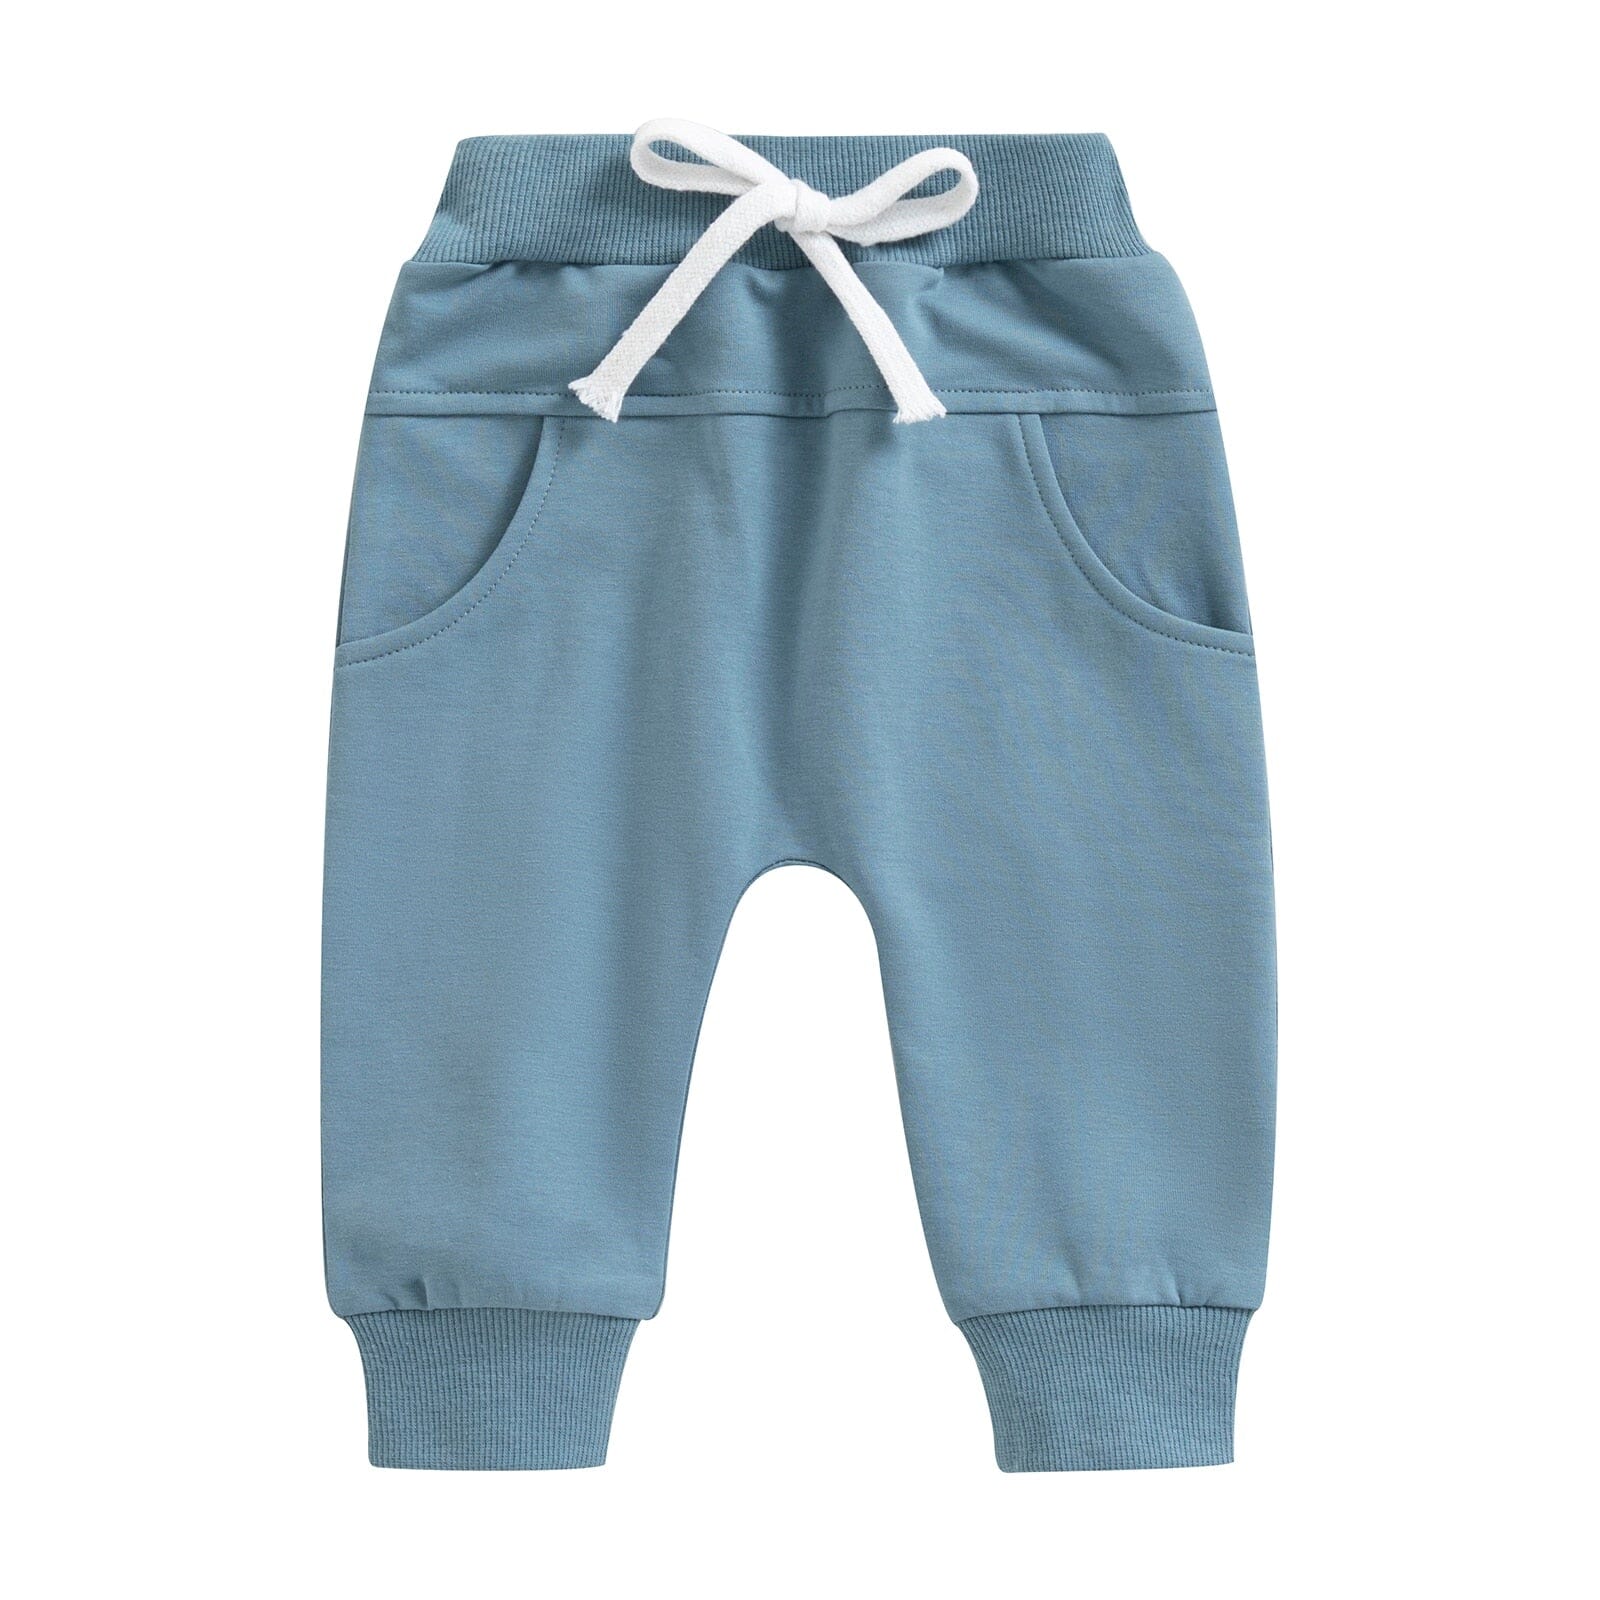 Calça Infantil Cadarço Loja Click Certo Azul 2-3 Anos 